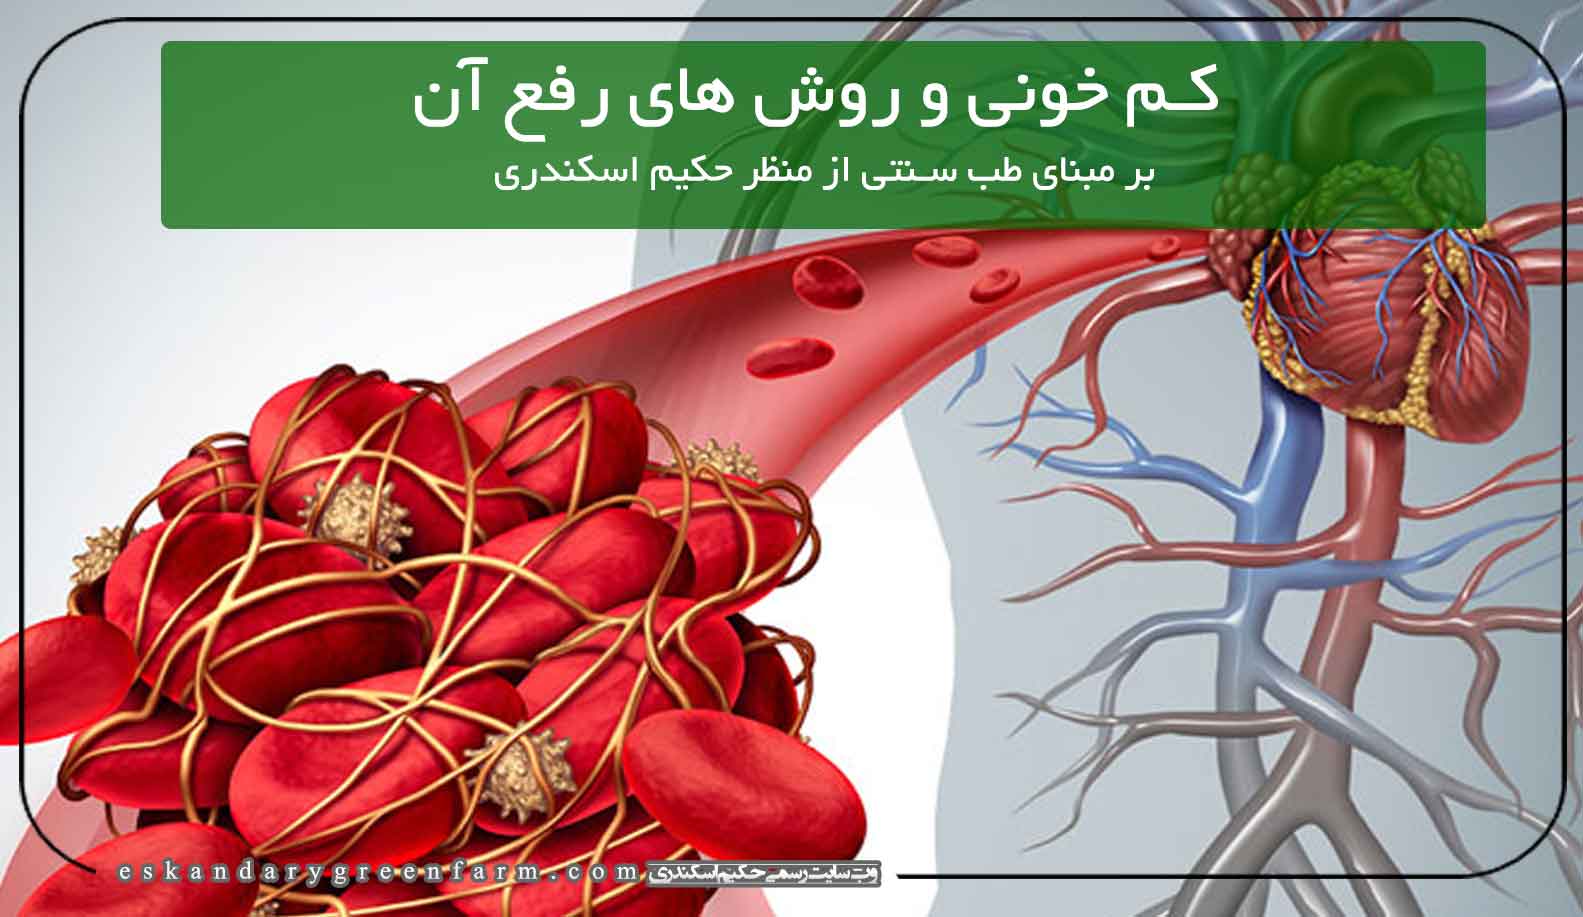 کم خونی و روشهای رفع کم خونی از منظر حکیم اسکندری